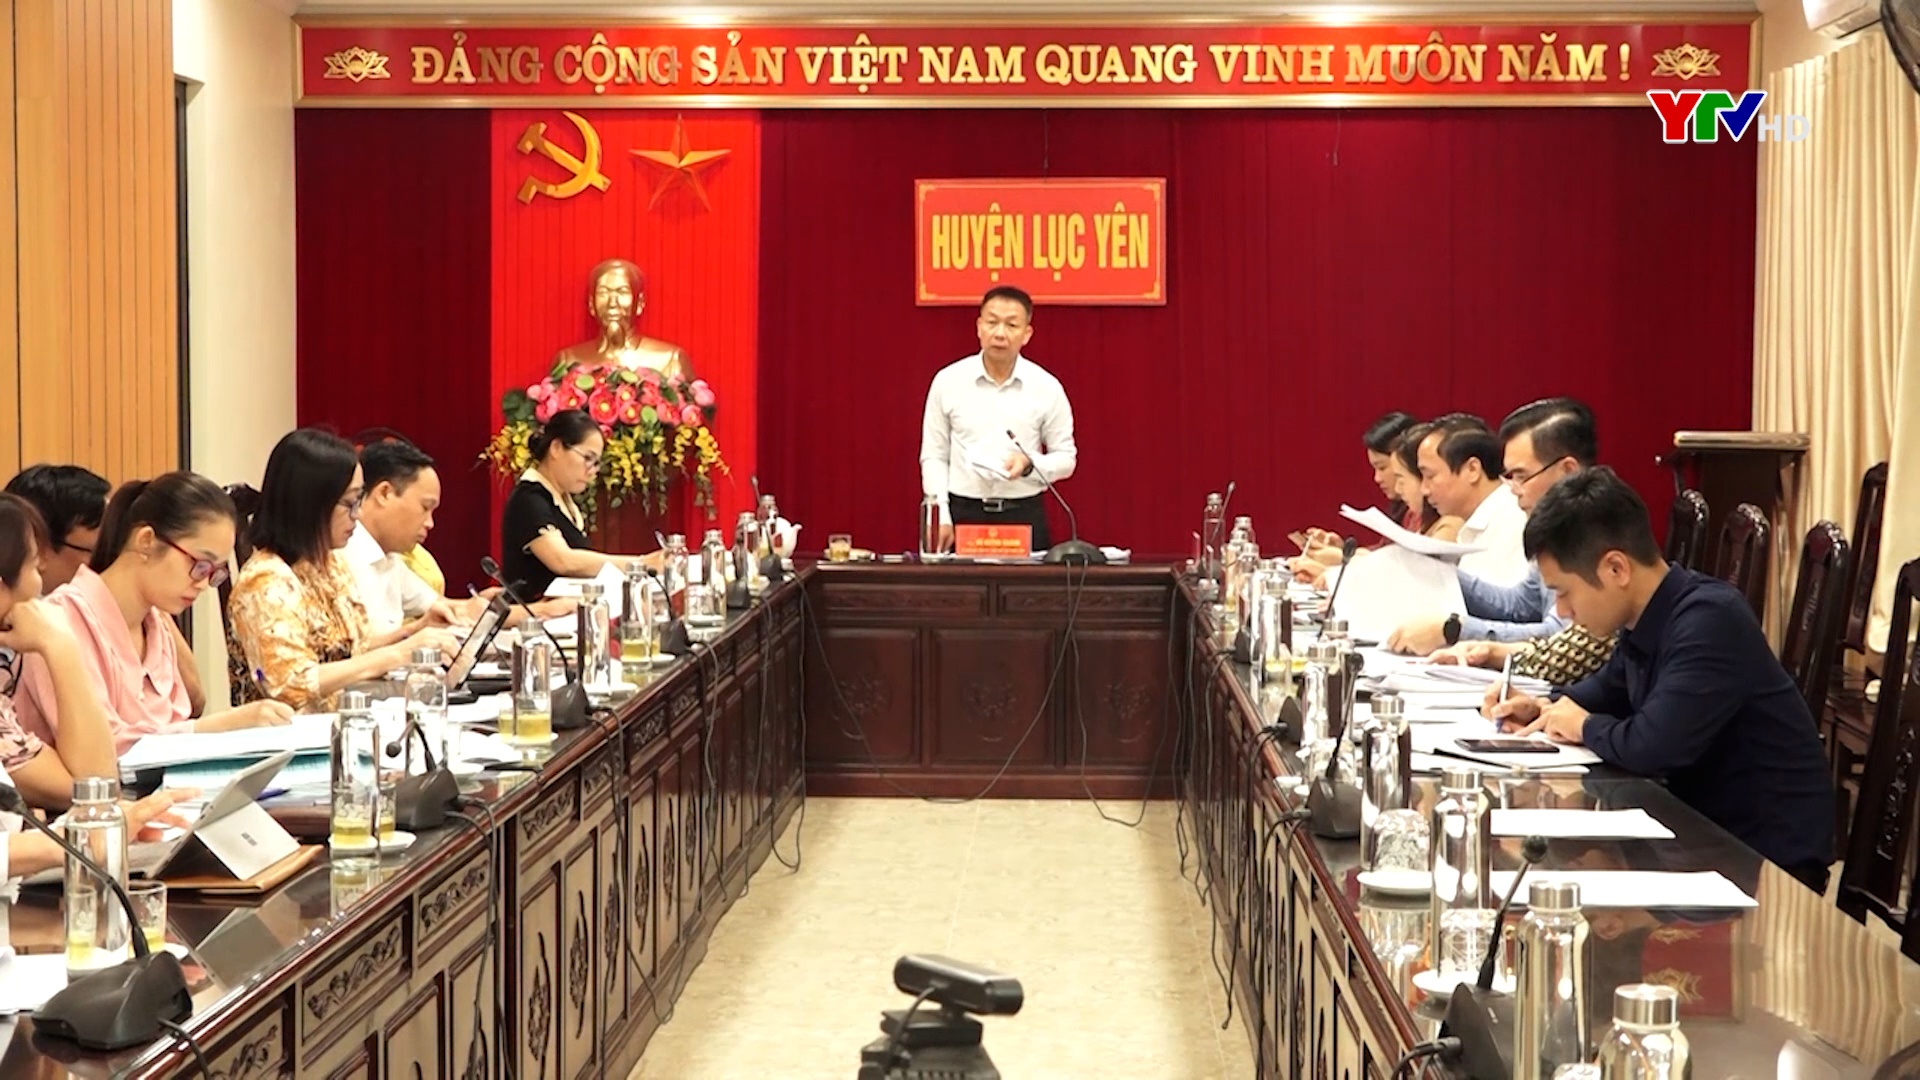 Đồng chí Phó Chủ tịch HĐND tỉnh Vũ Quỳnh Khánh giám sát việc thực hiện các nghị quyết của HĐND tỉnh tại Lục Yên